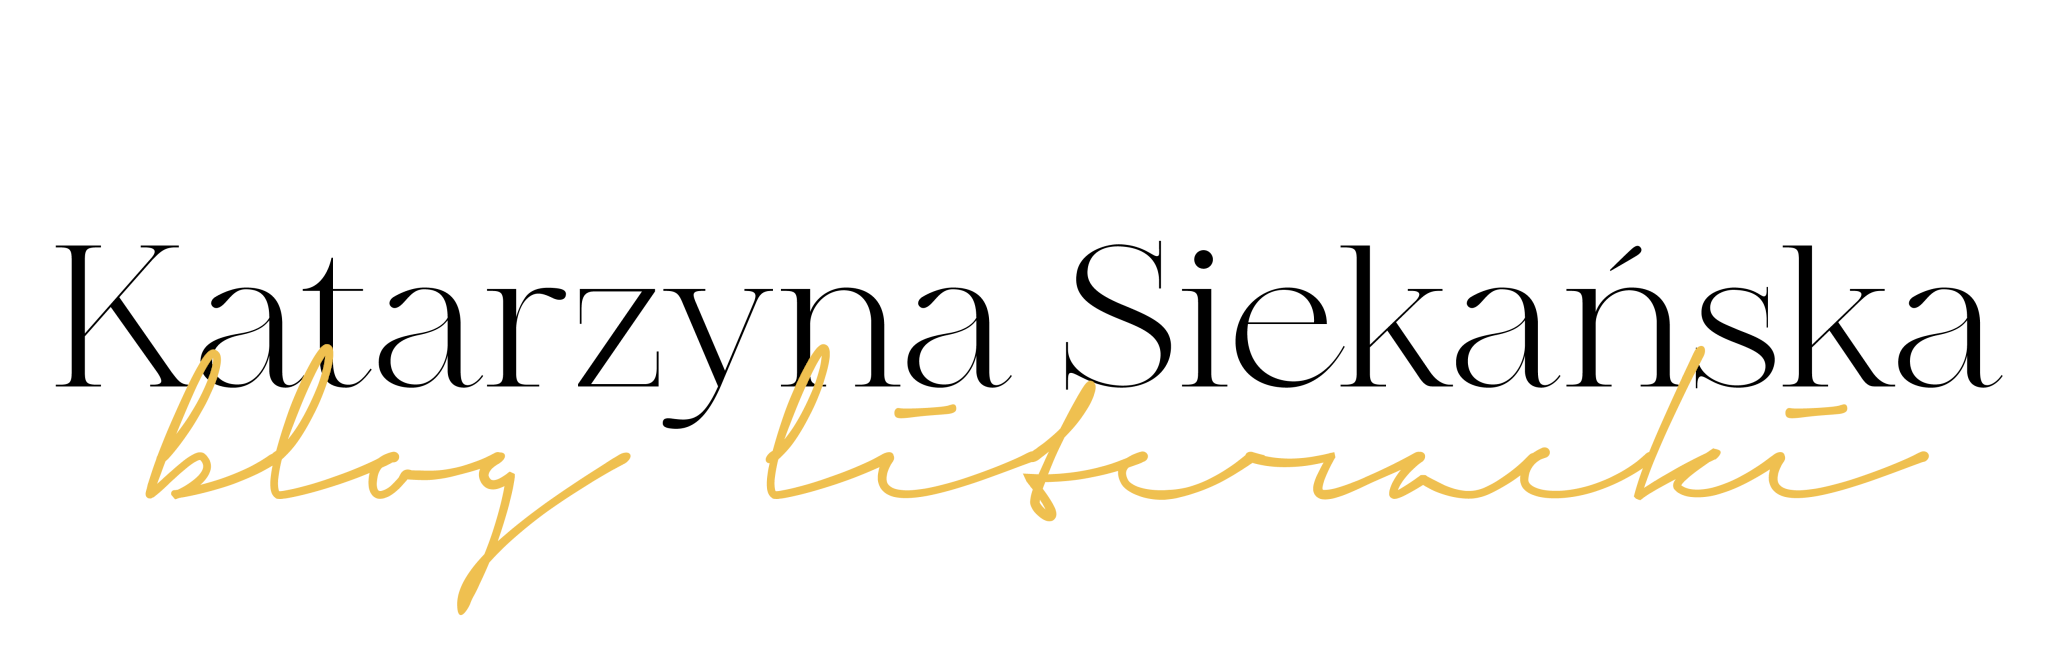 siekanska.com logo